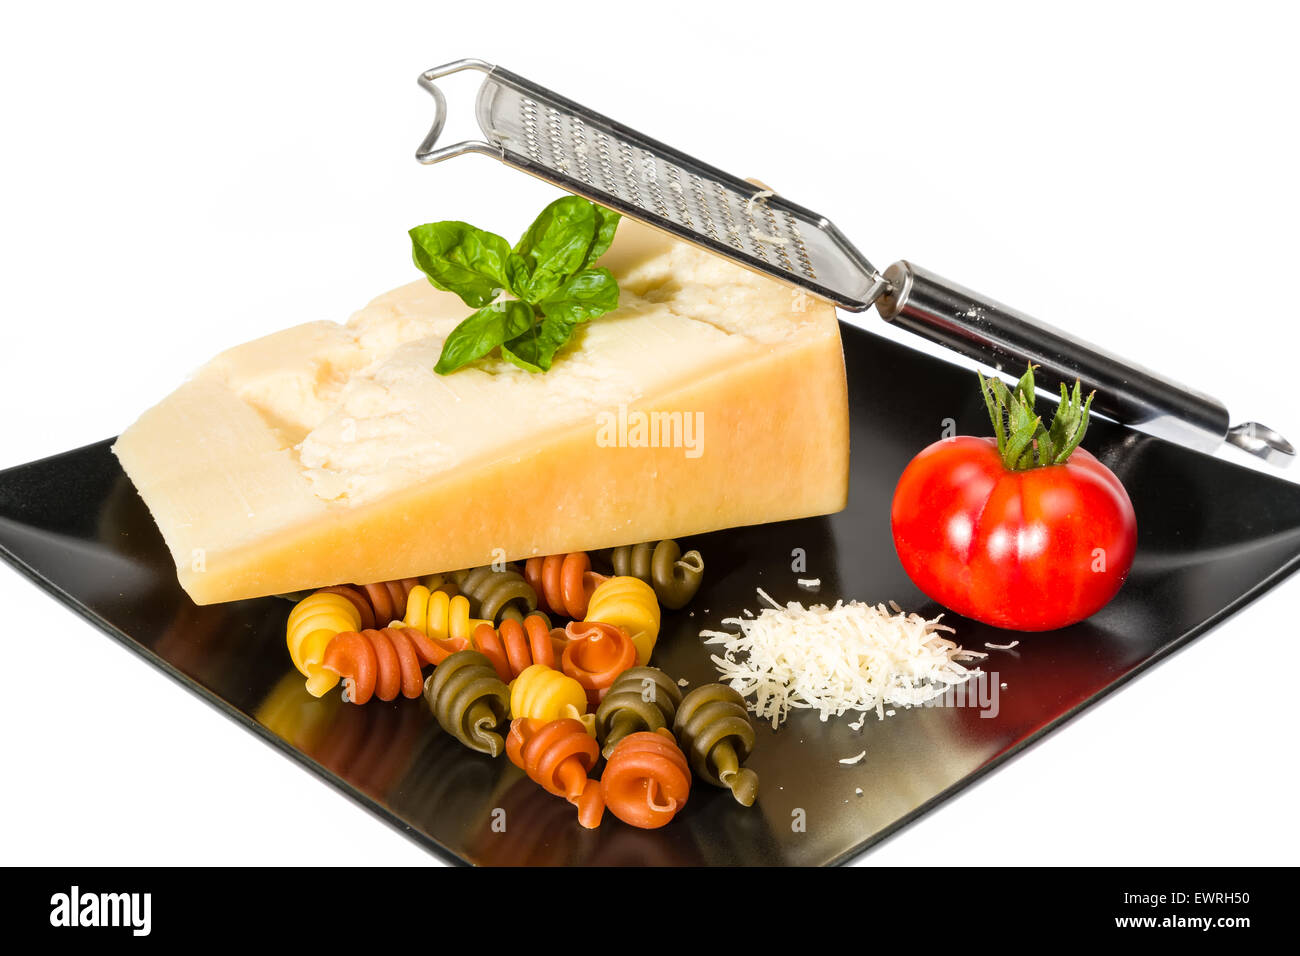 Le fromage, pâtes, tomate et basilic - matière première de la cuisine italienne Banque D'Images